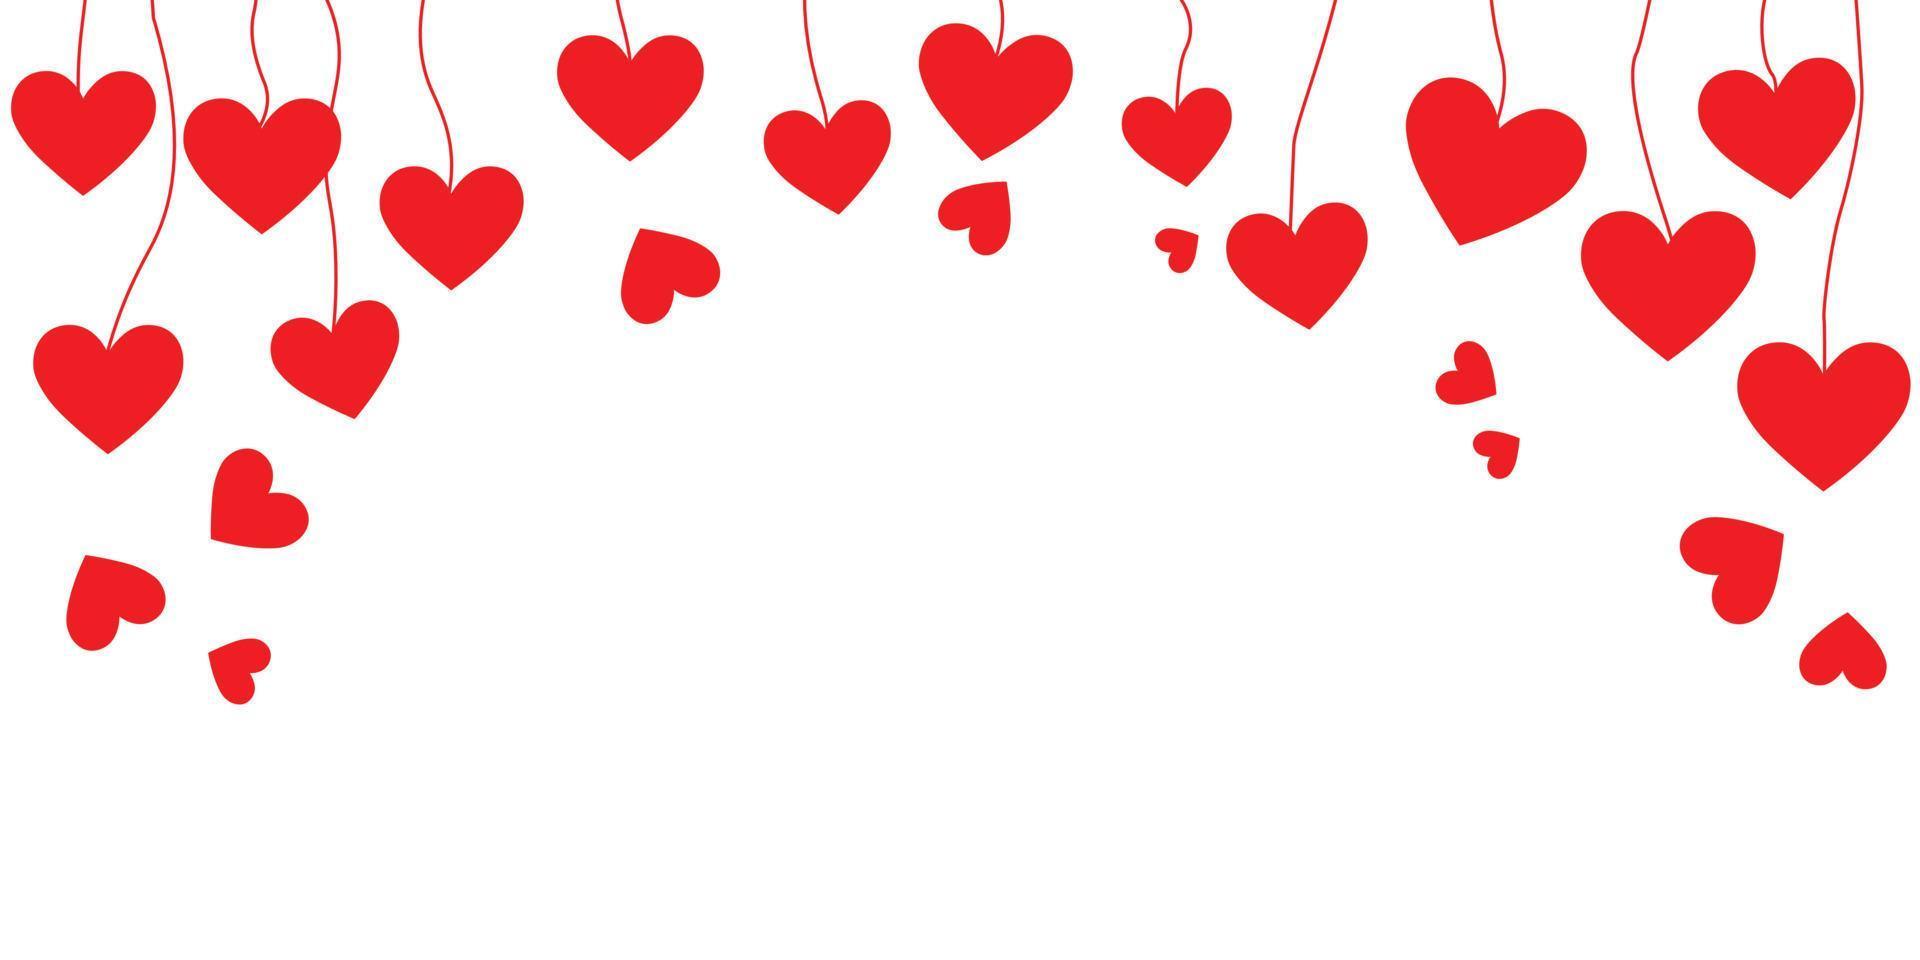 fundo branco com uma guirlanda de corações vermelhos. herói web banner com decoração de corações de papel pendurados. decorativo de corações. bandeira panorâmica de corações caindo. vetor